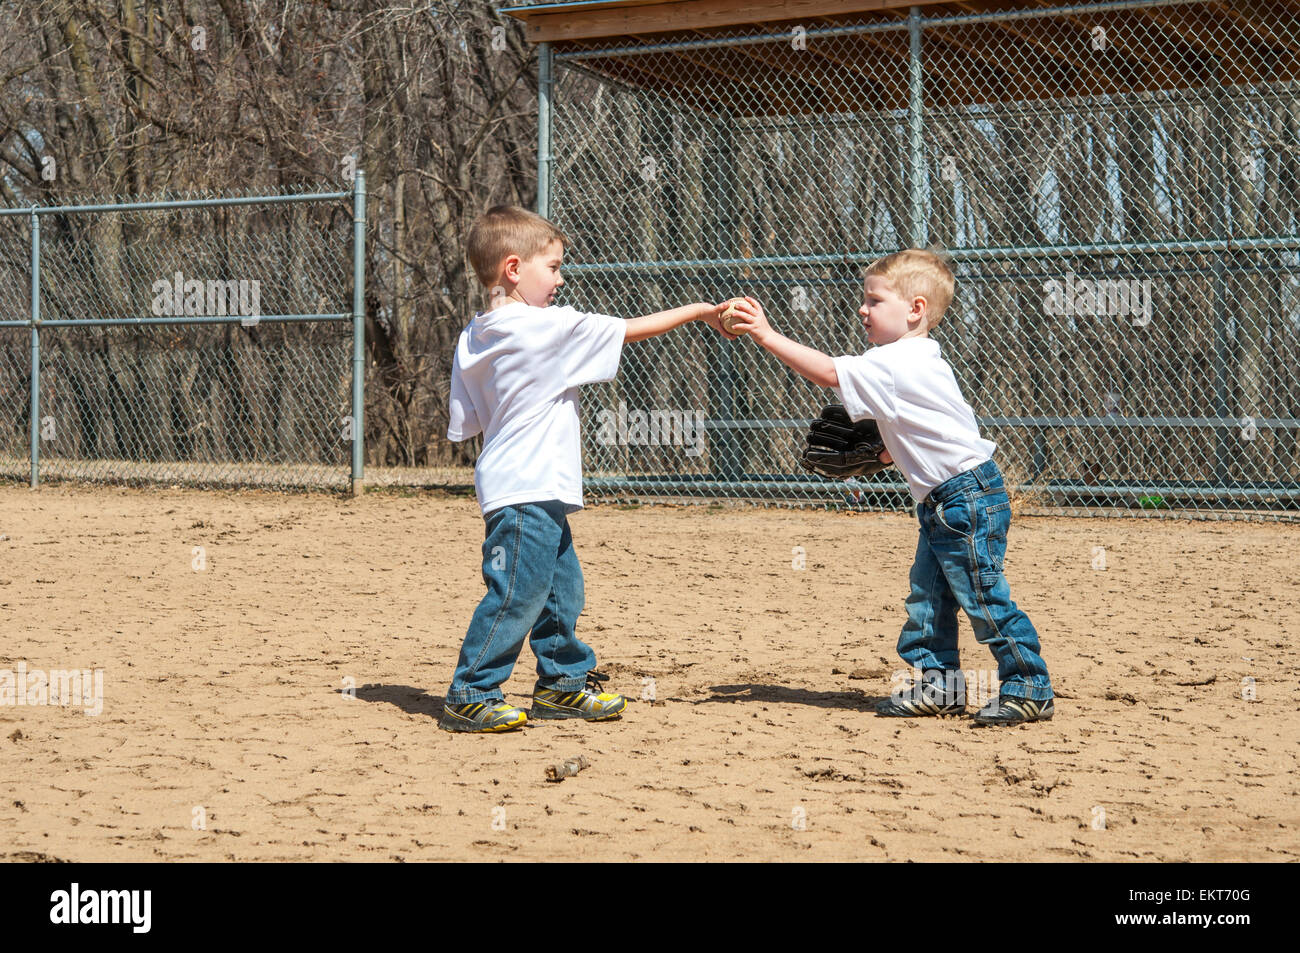 Zwei Jungs geben einander einen Baseball auf Feld Stockfoto